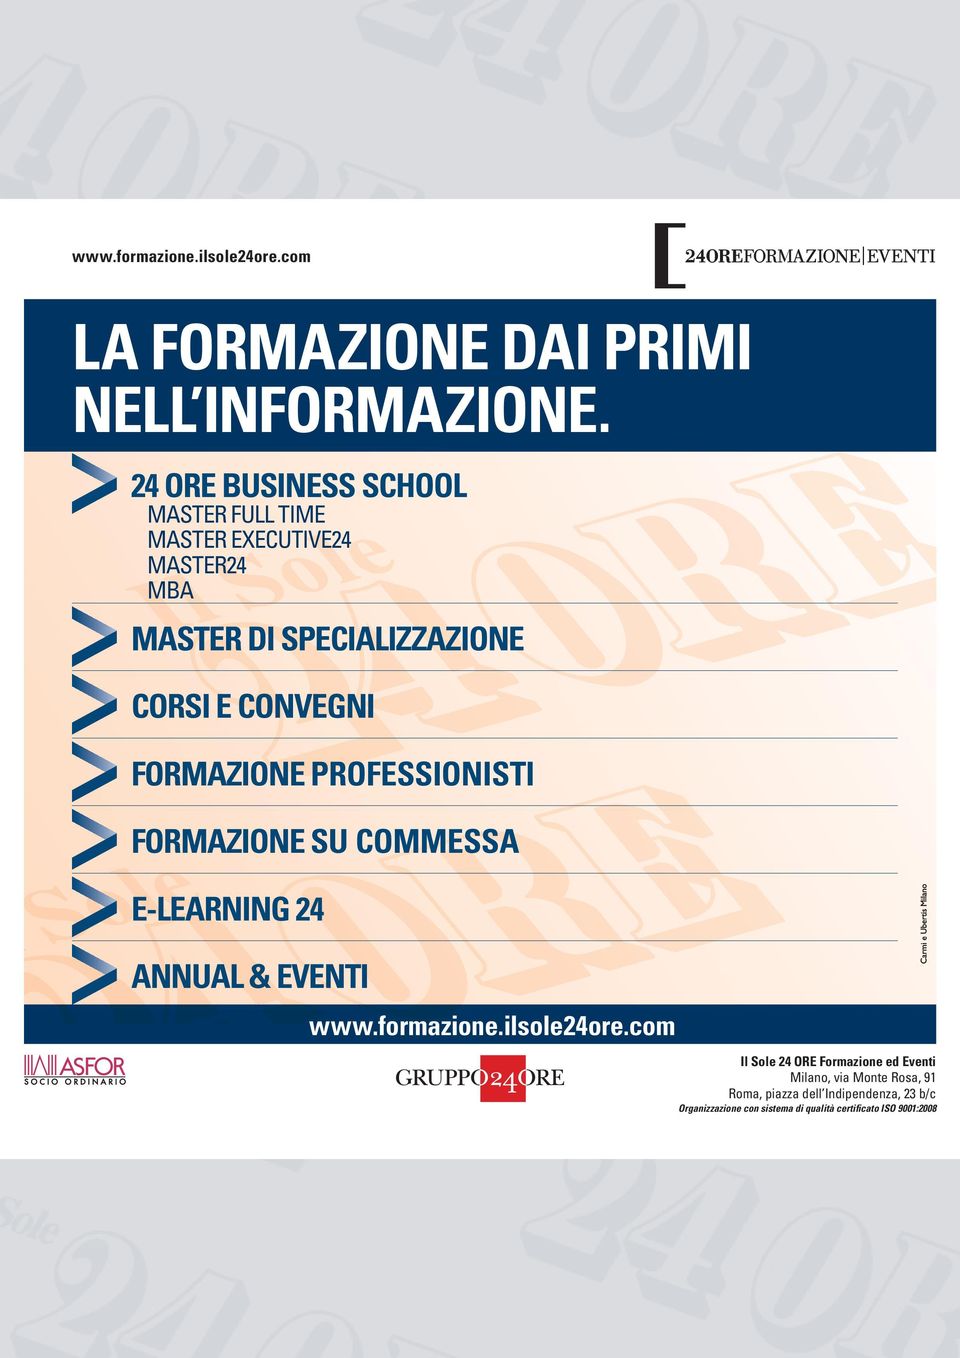 FORMAZIONE PROFESSIONISTI FORMAZIONE SU COMMESSA E-LEARNING 24 ANNUAL & EVENTI www.formazione.ilsole24ore.